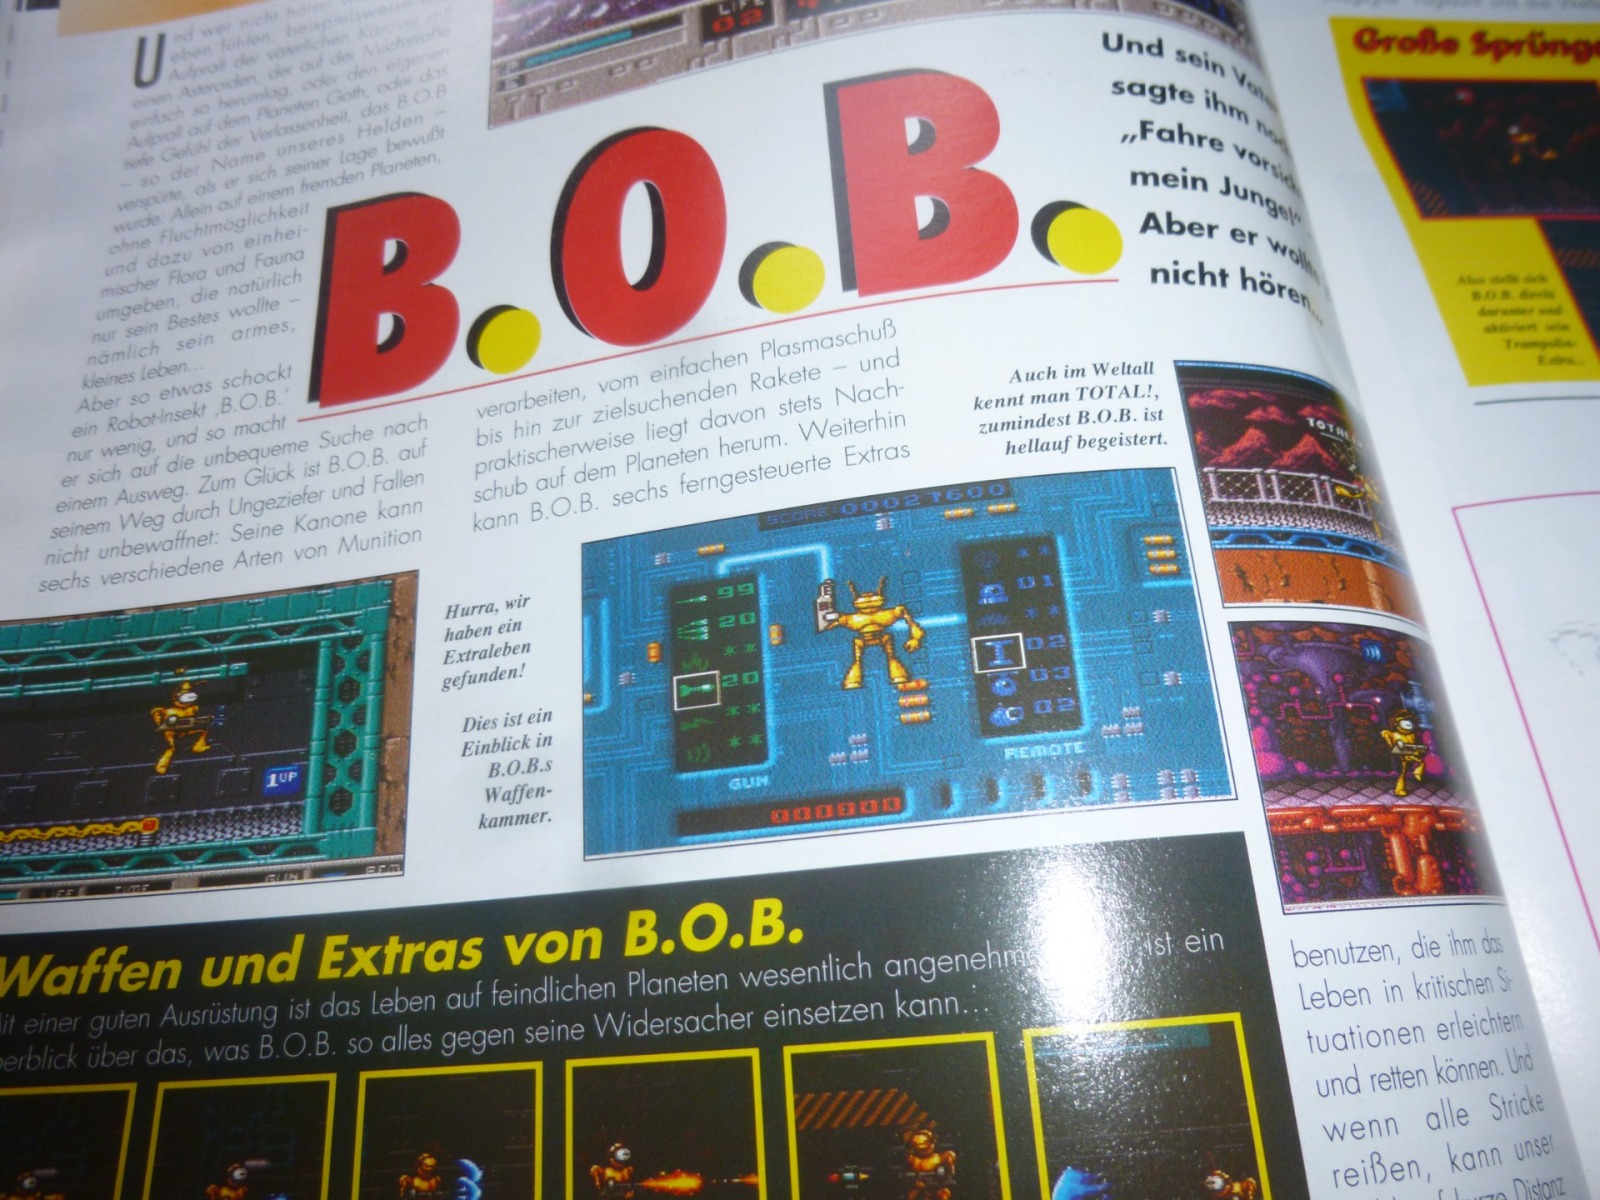 TOTAL Das unabhängige Magazin - 100 Nintendo - Ausgabe 7/93 1993 26